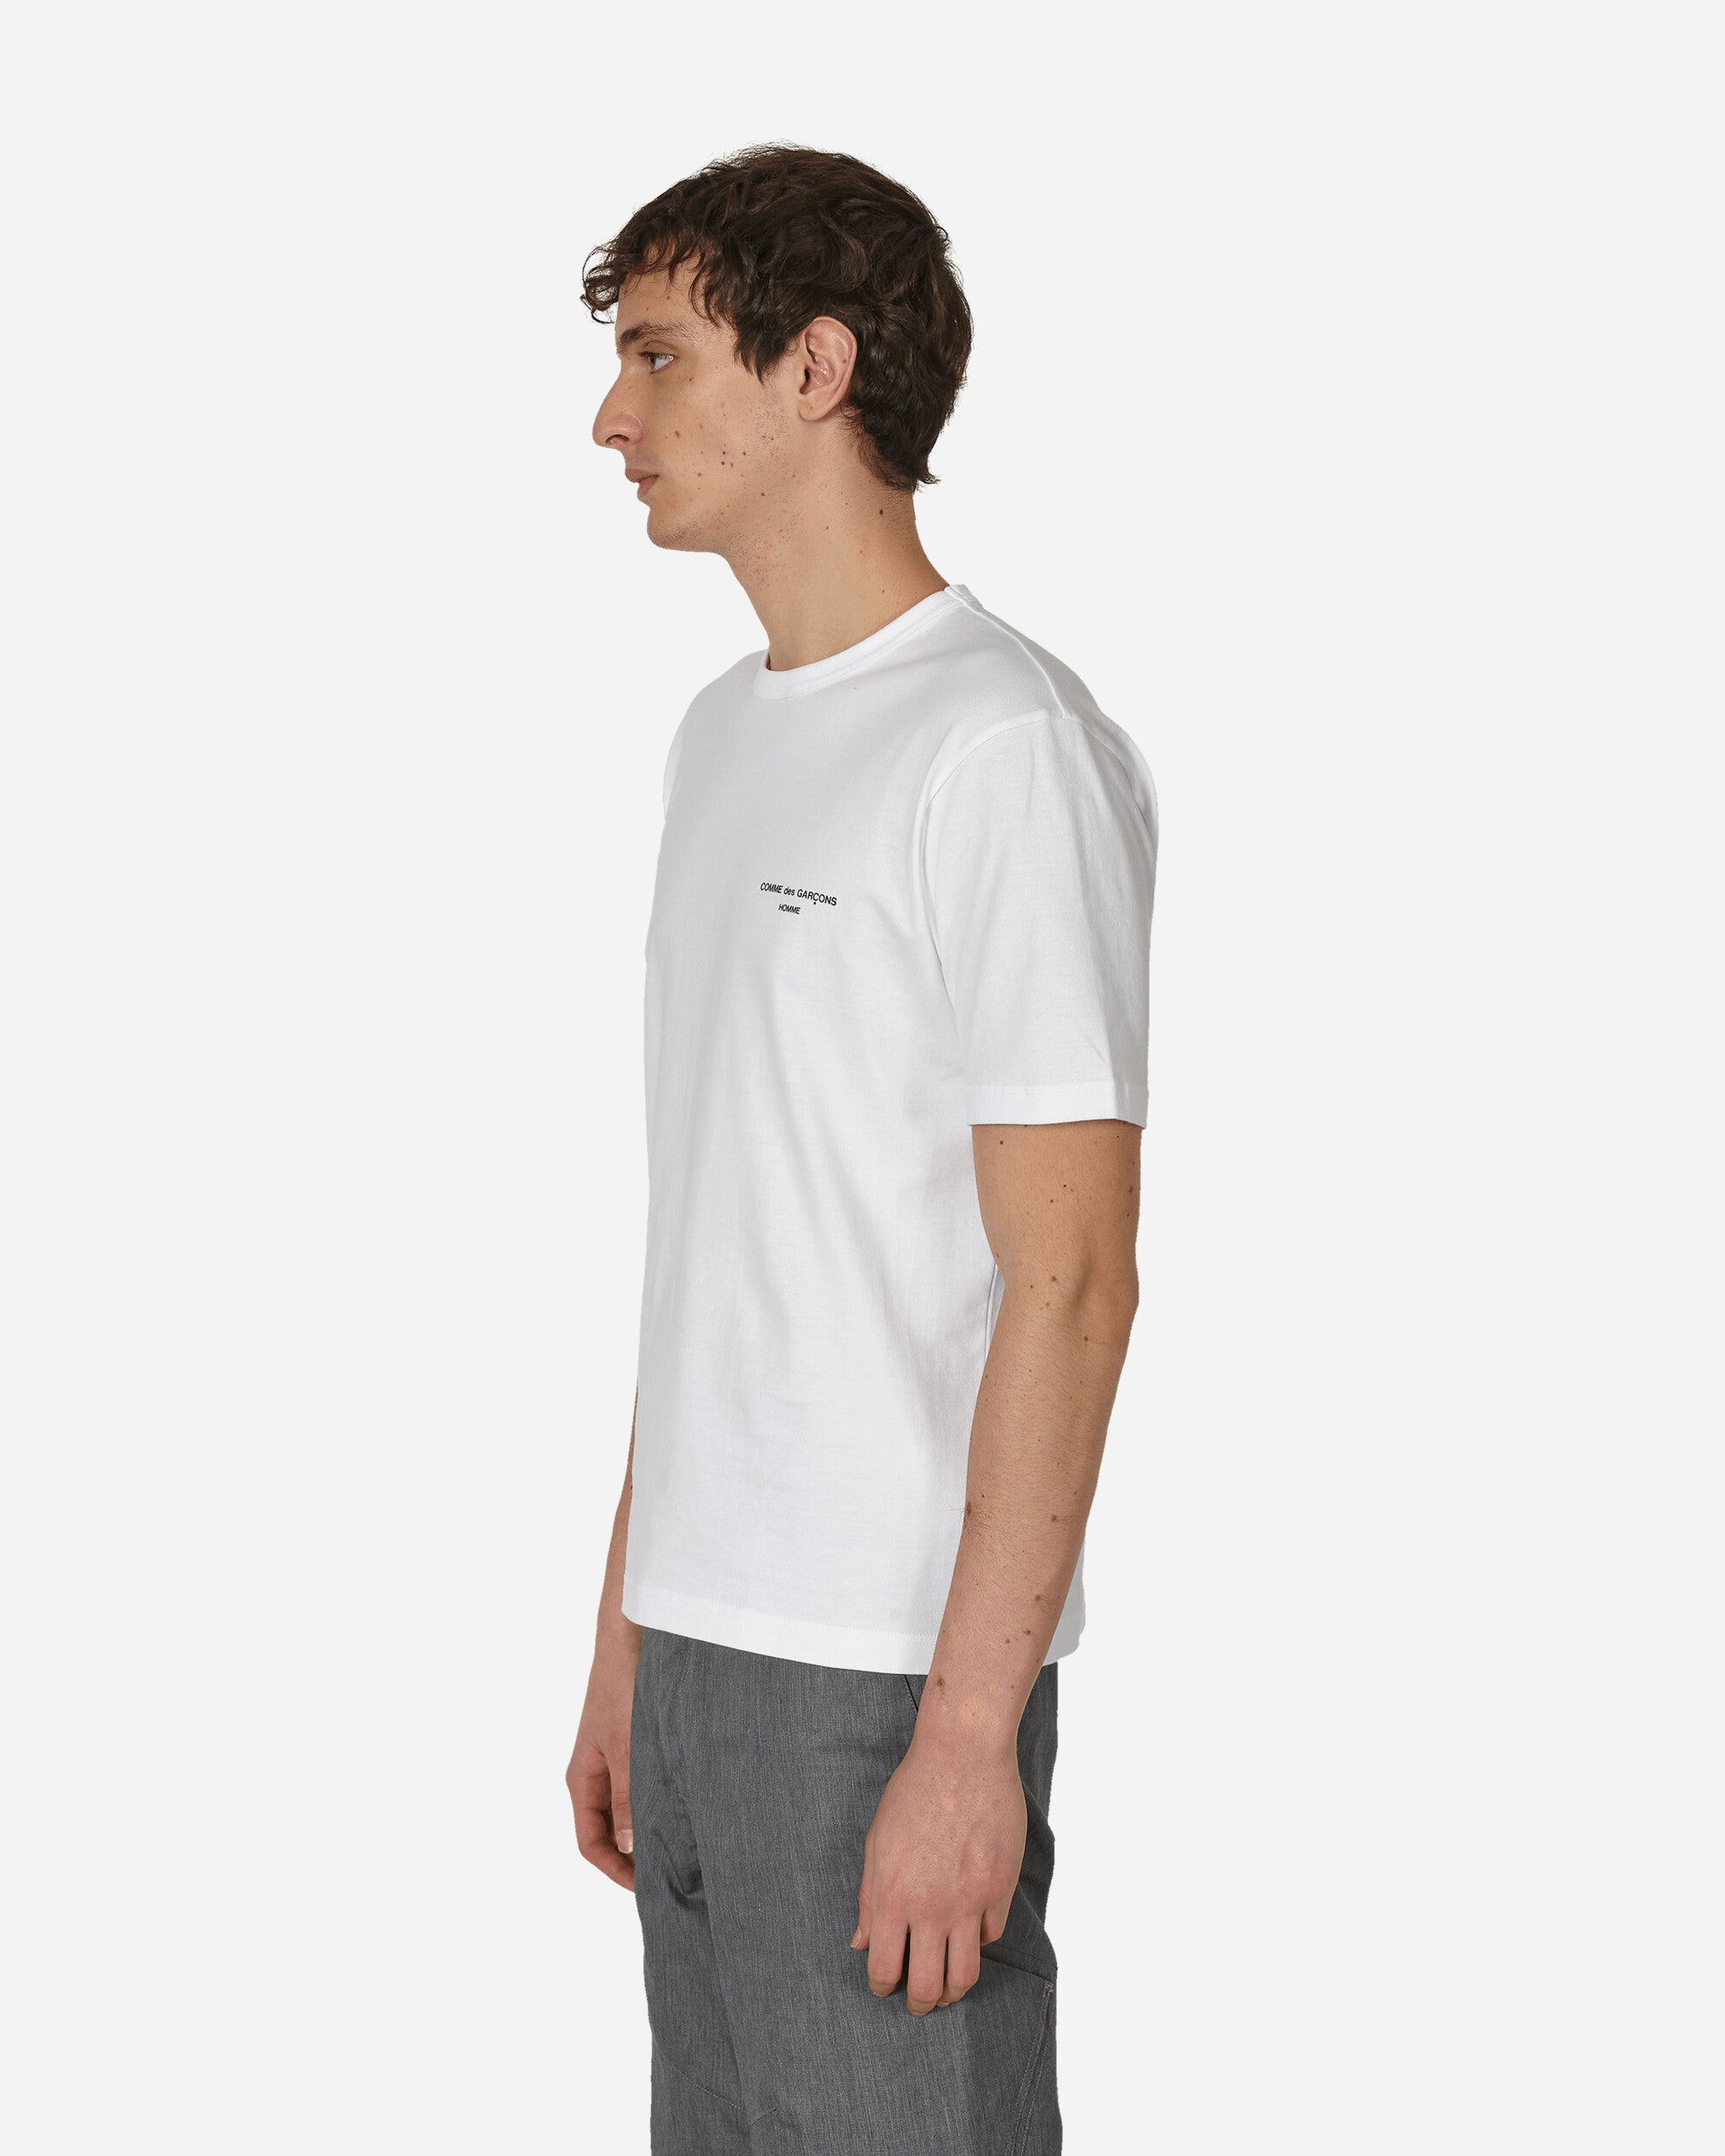 Comme Des Garçons Homme Men'S T-Shirt White T-Shirts Shortsleeve HM-T101-051 2